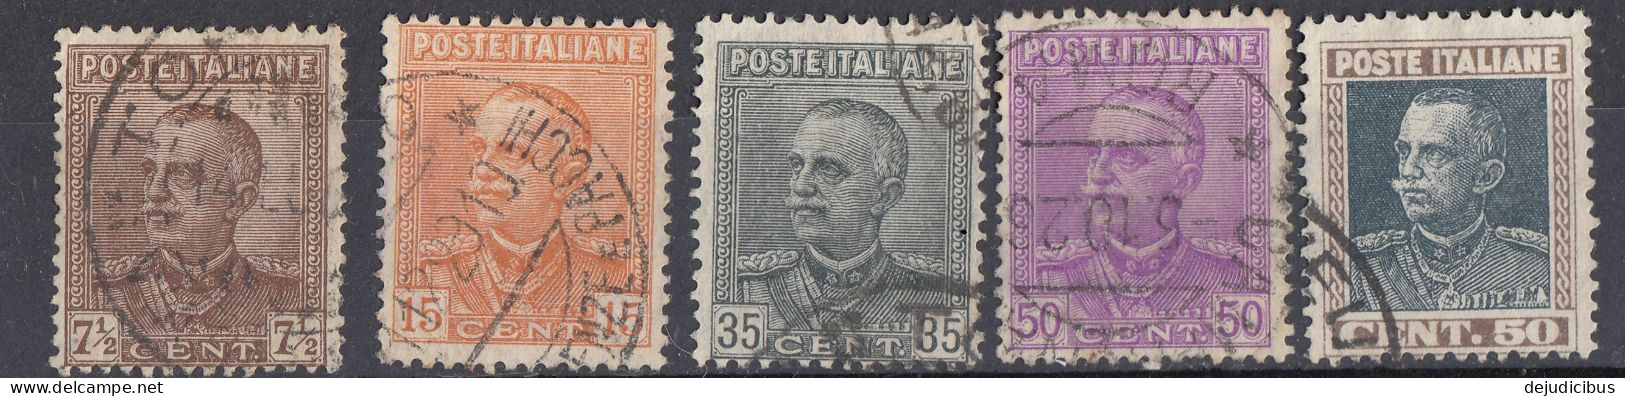 ITALIA - 1927/1929 - Serie Completa Per Complessivi 5 Valori Usati: Yvert 204/208, Come Da Immagine. - Gebraucht